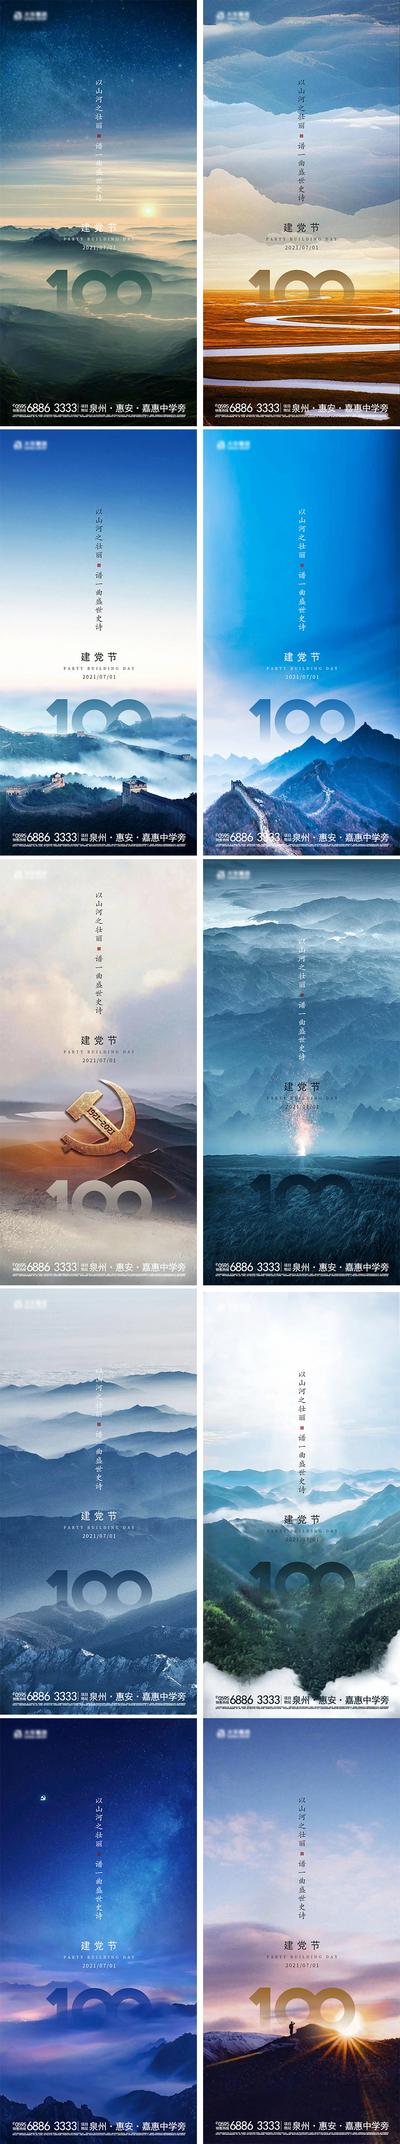 南门网 海报 公历节日 地产 建党节 100周年 系列 风景 